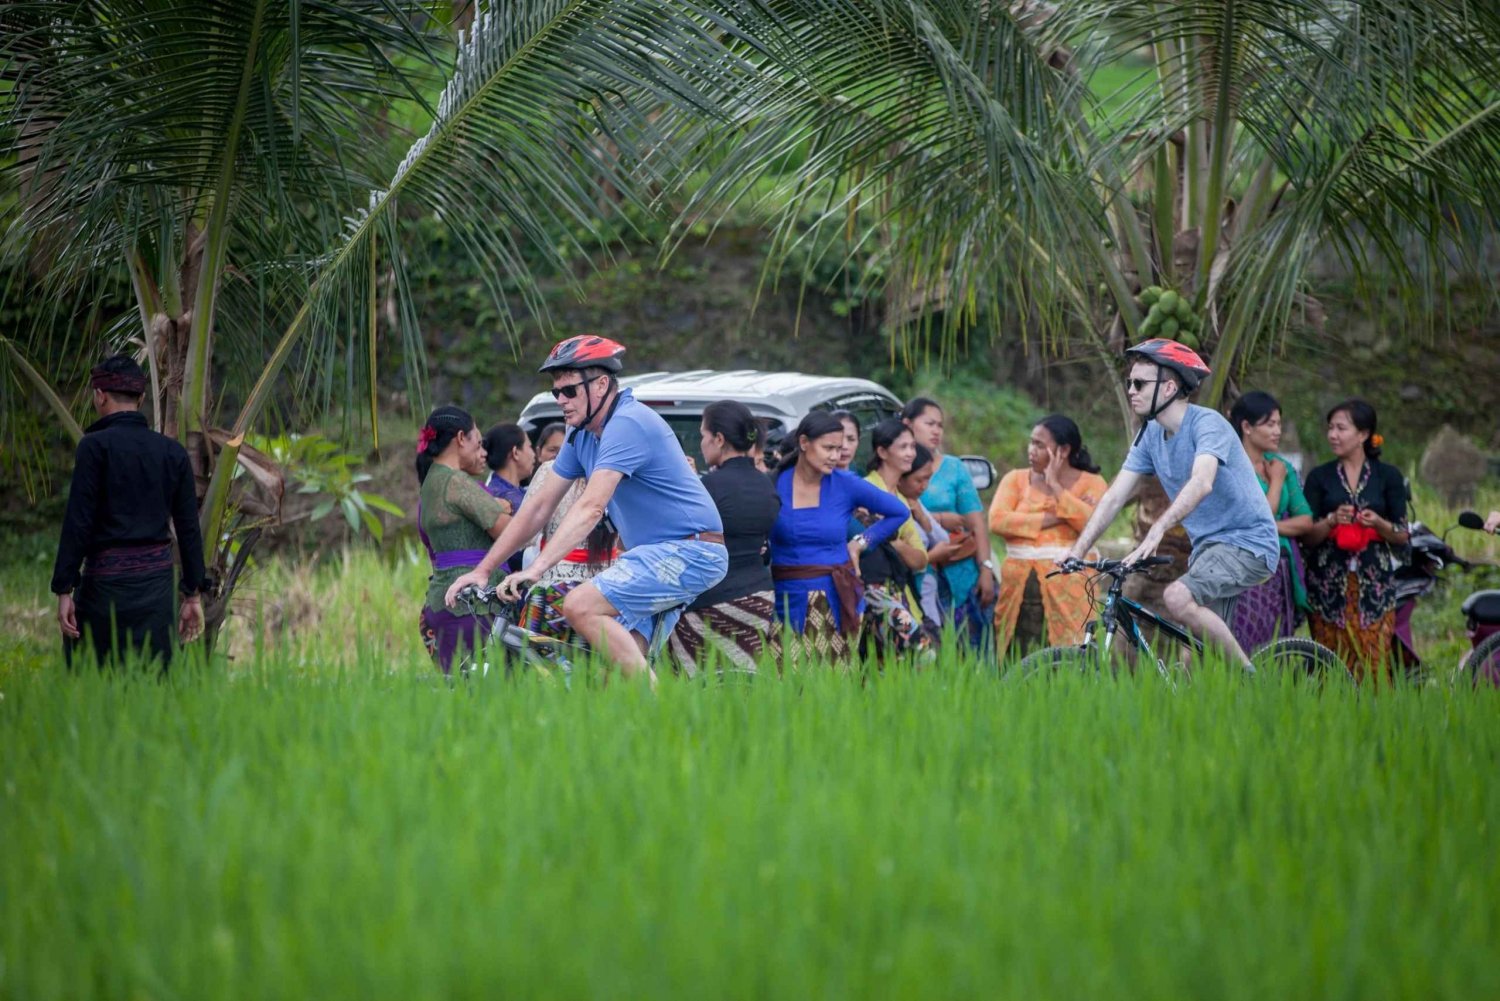 Tour di Ubud in bicicletta: Avventura in bicicletta tutto compreso